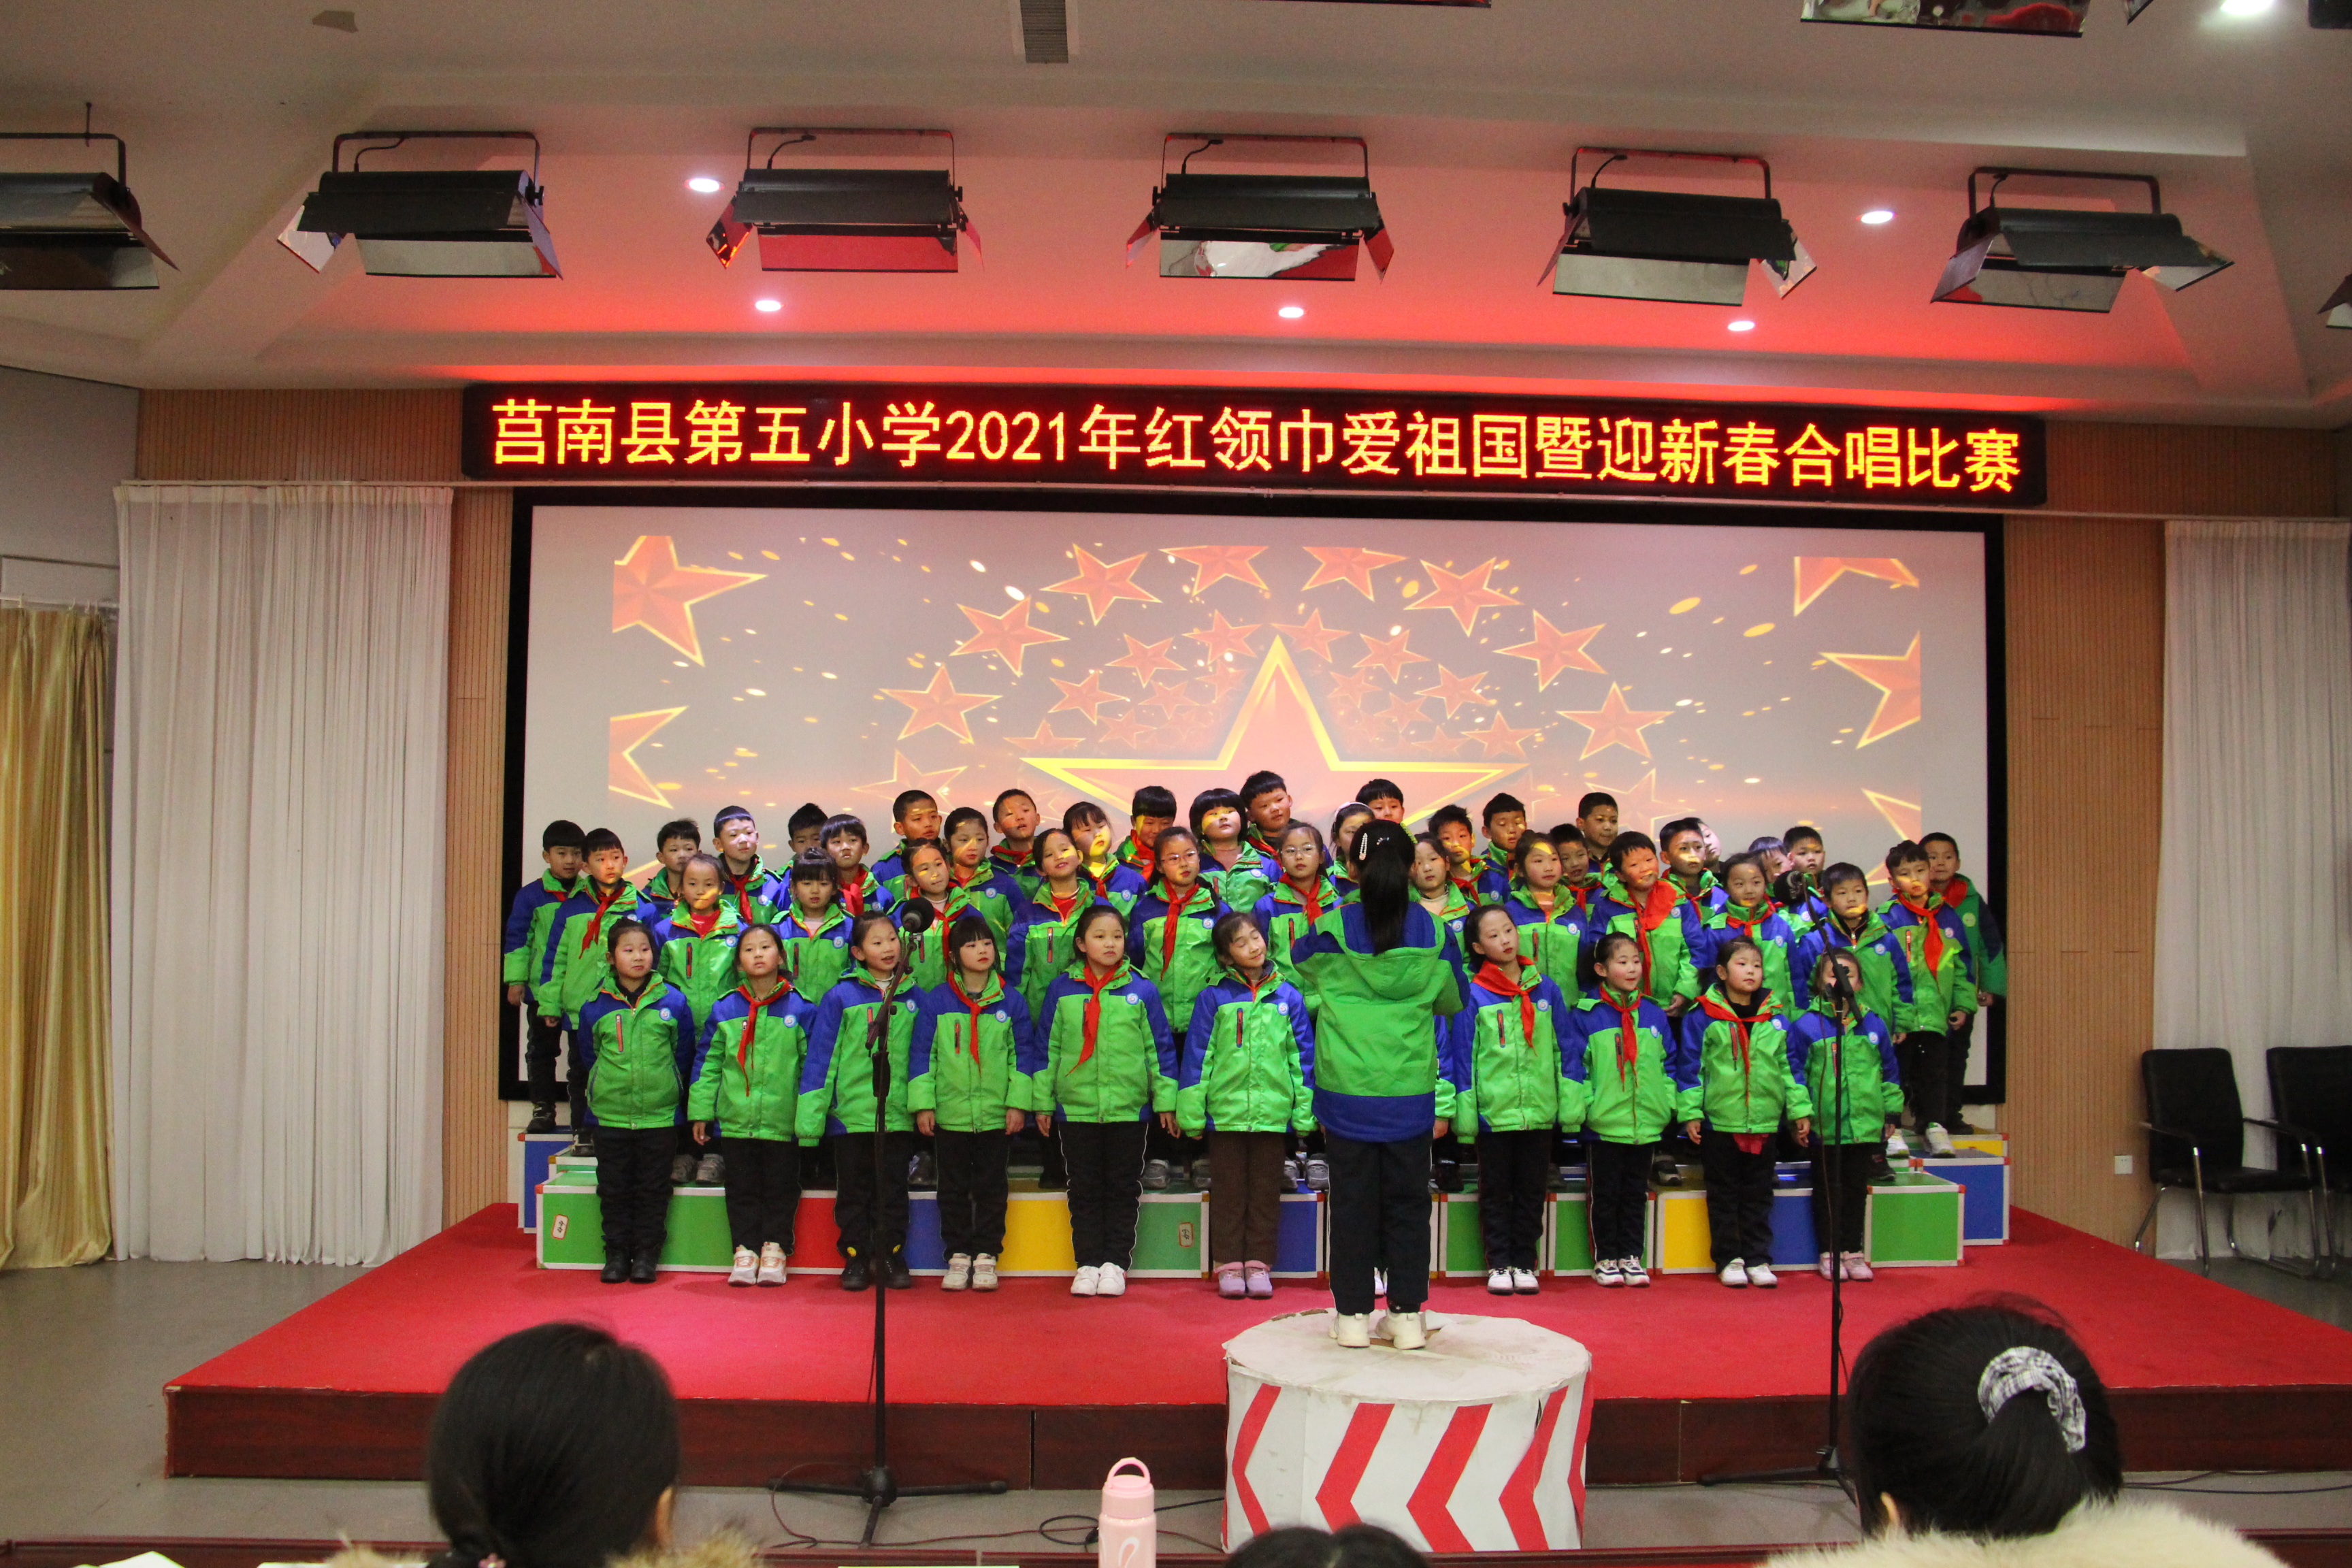 莒南五小党支部副书记王勇致开幕词并宣布比赛开始.